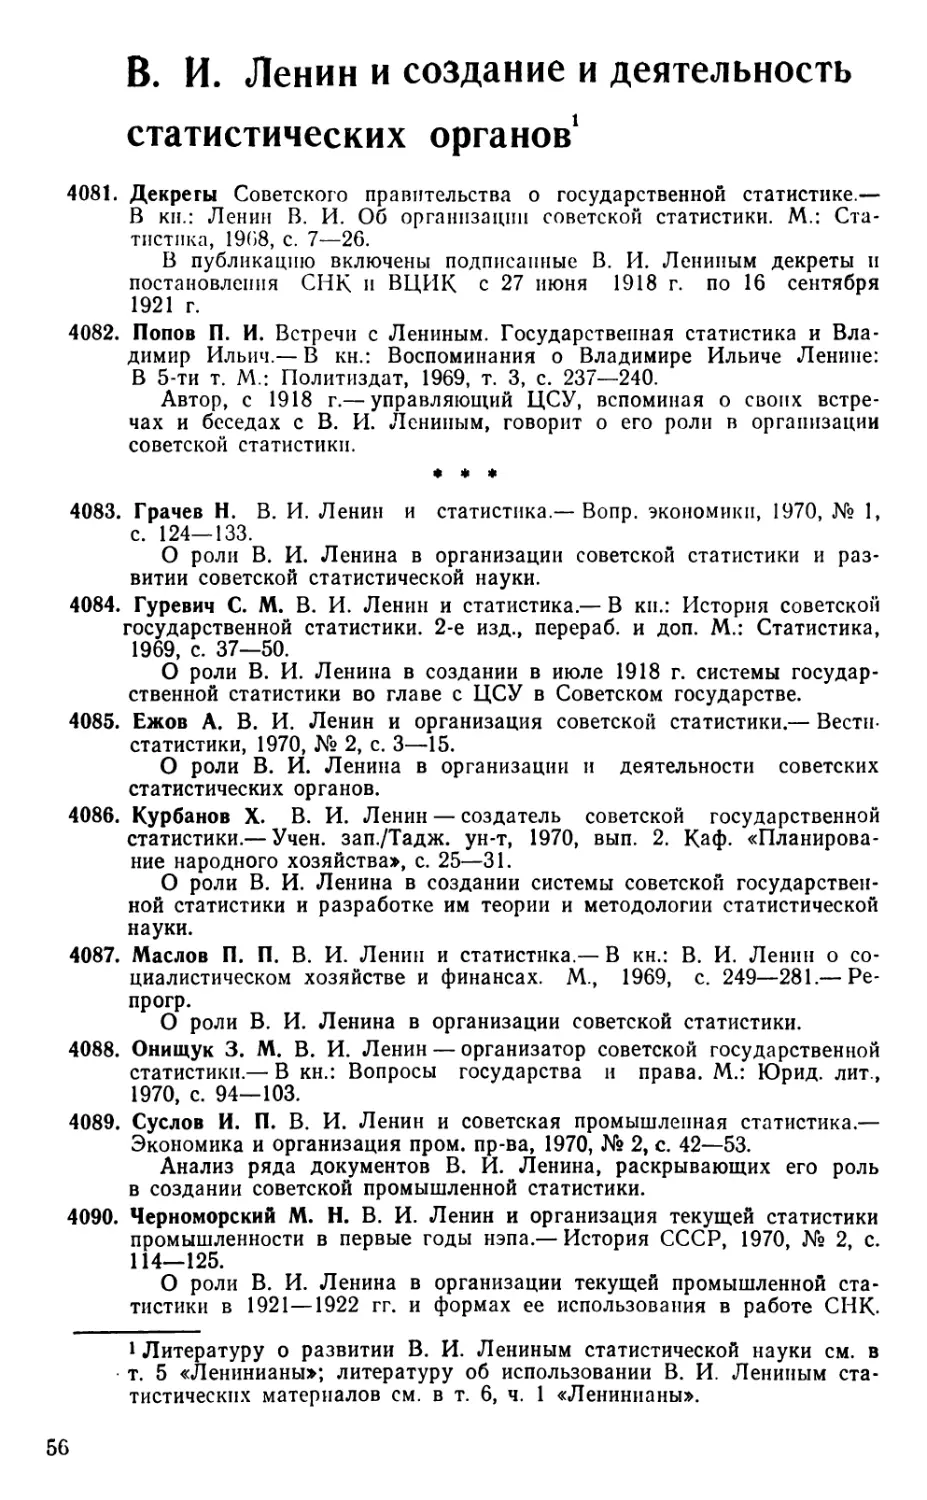 В. И. Ленин и создание и деятельность статистических органов